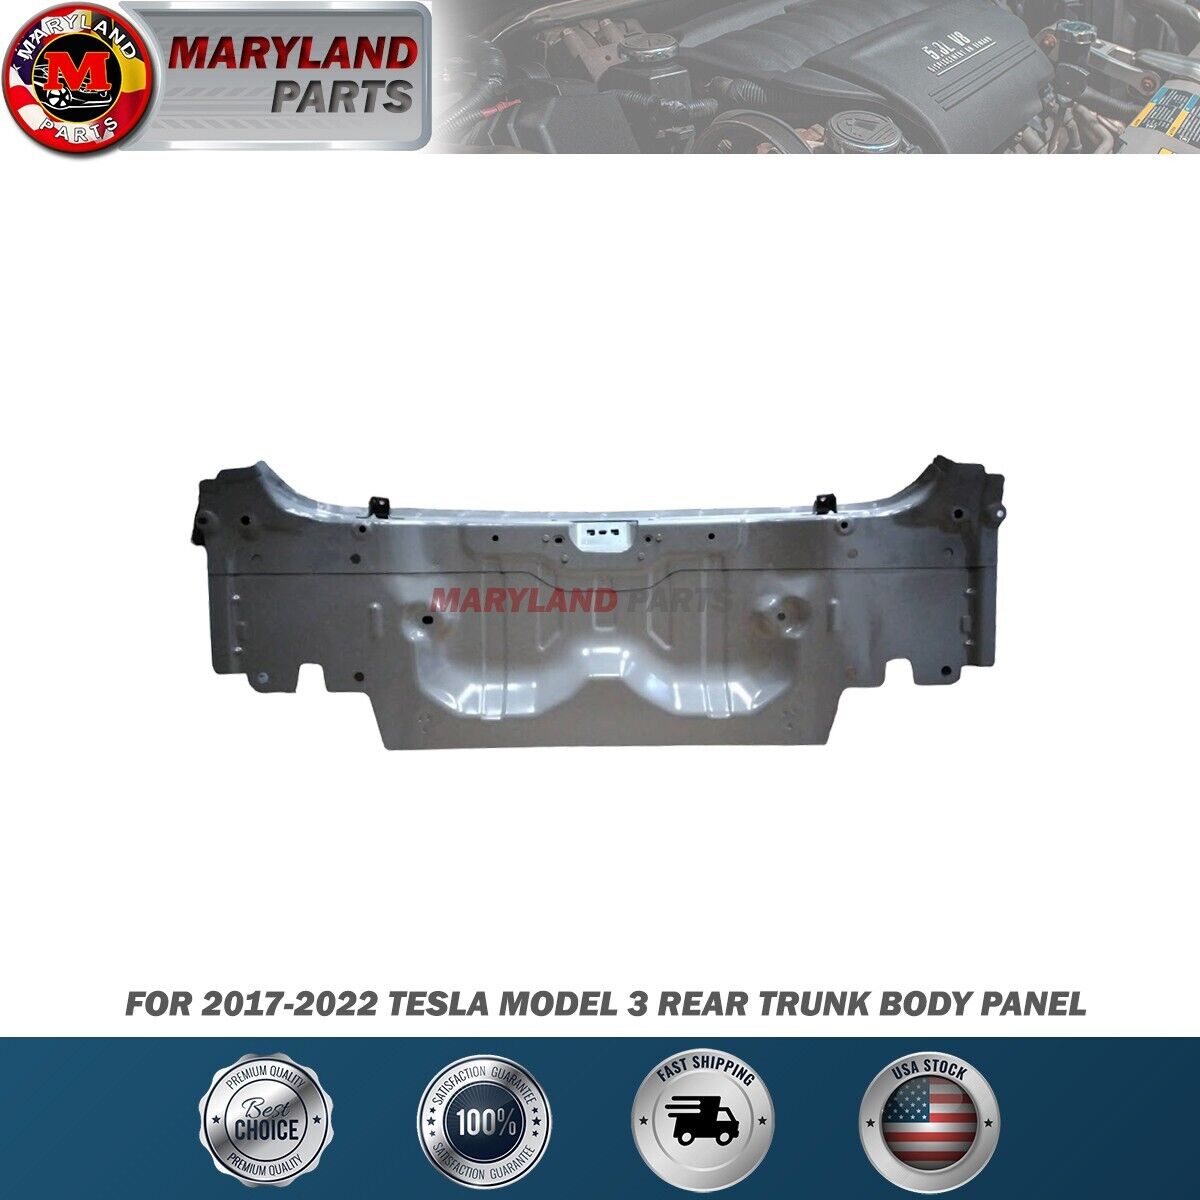 For 2017-2022 Tesla Model 3 Rear Trunk Body Panel